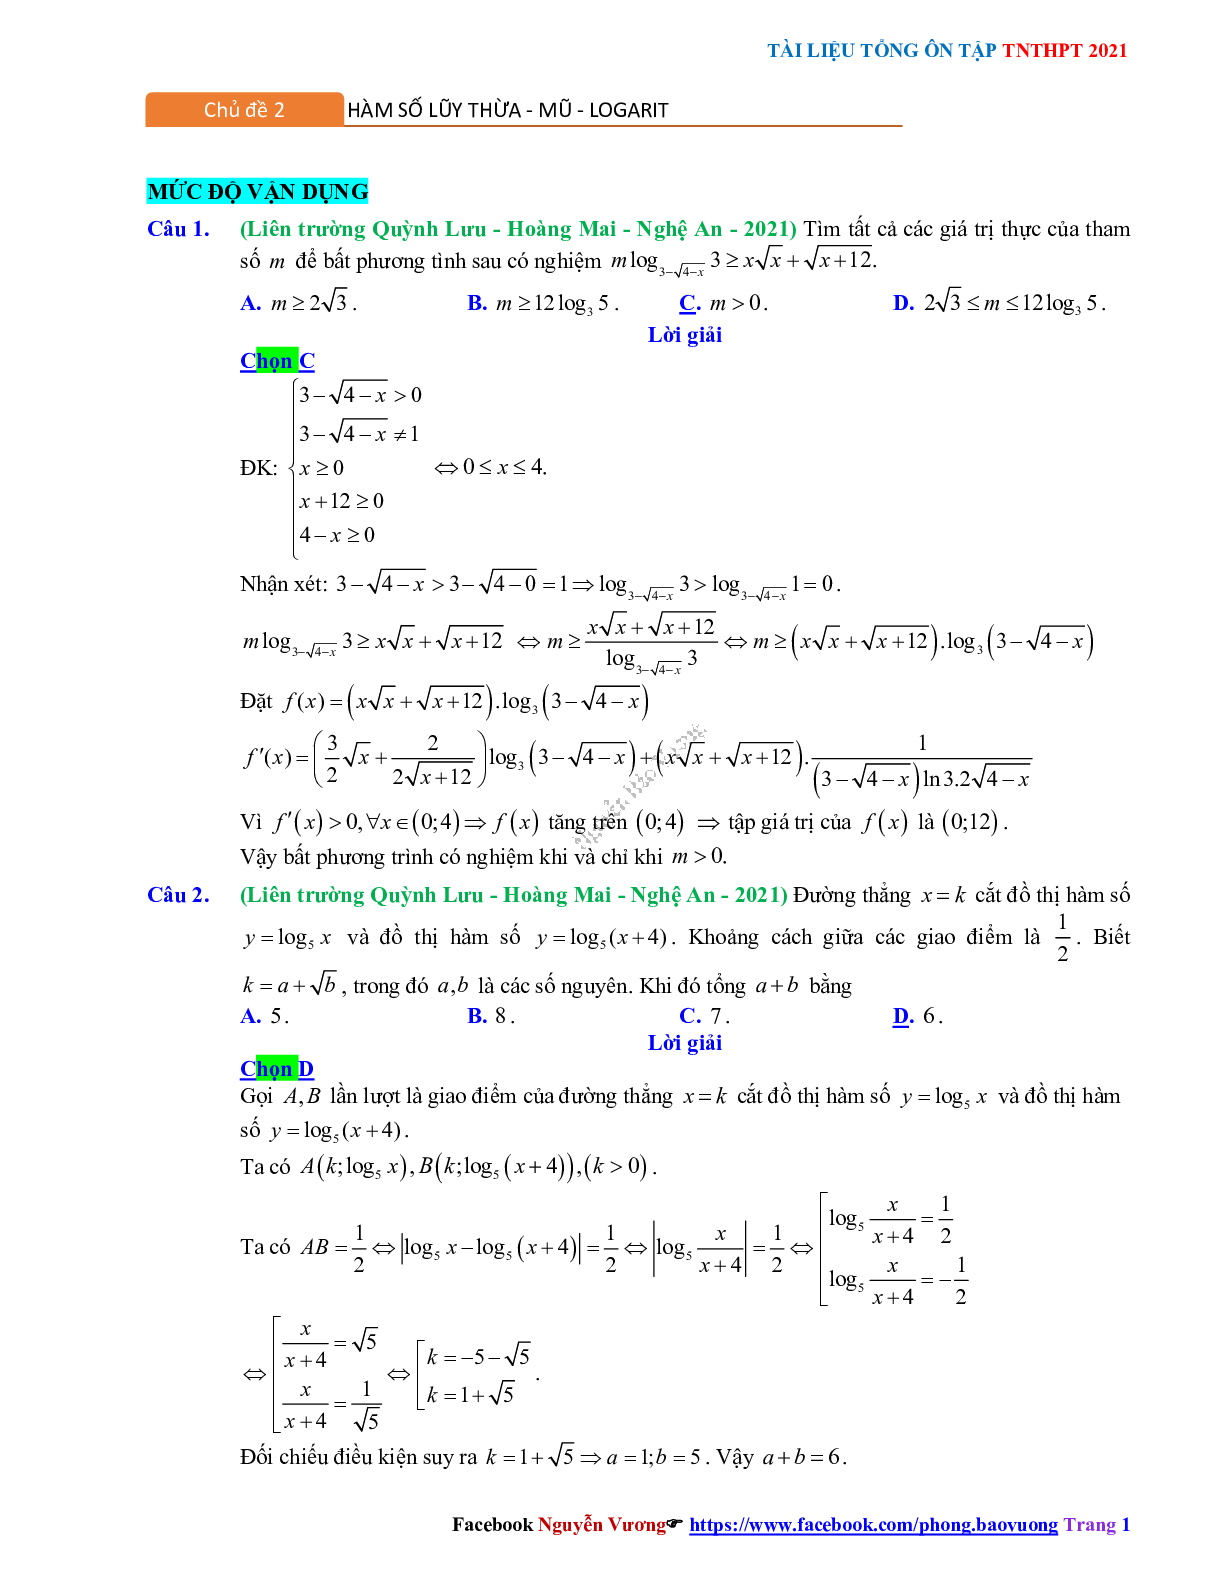 Trắc nghiệm Ôn thi THPT QG Toán 12: Đáp án mũ - lũy thừa - logarit mức độ vận dụng (trang 1)